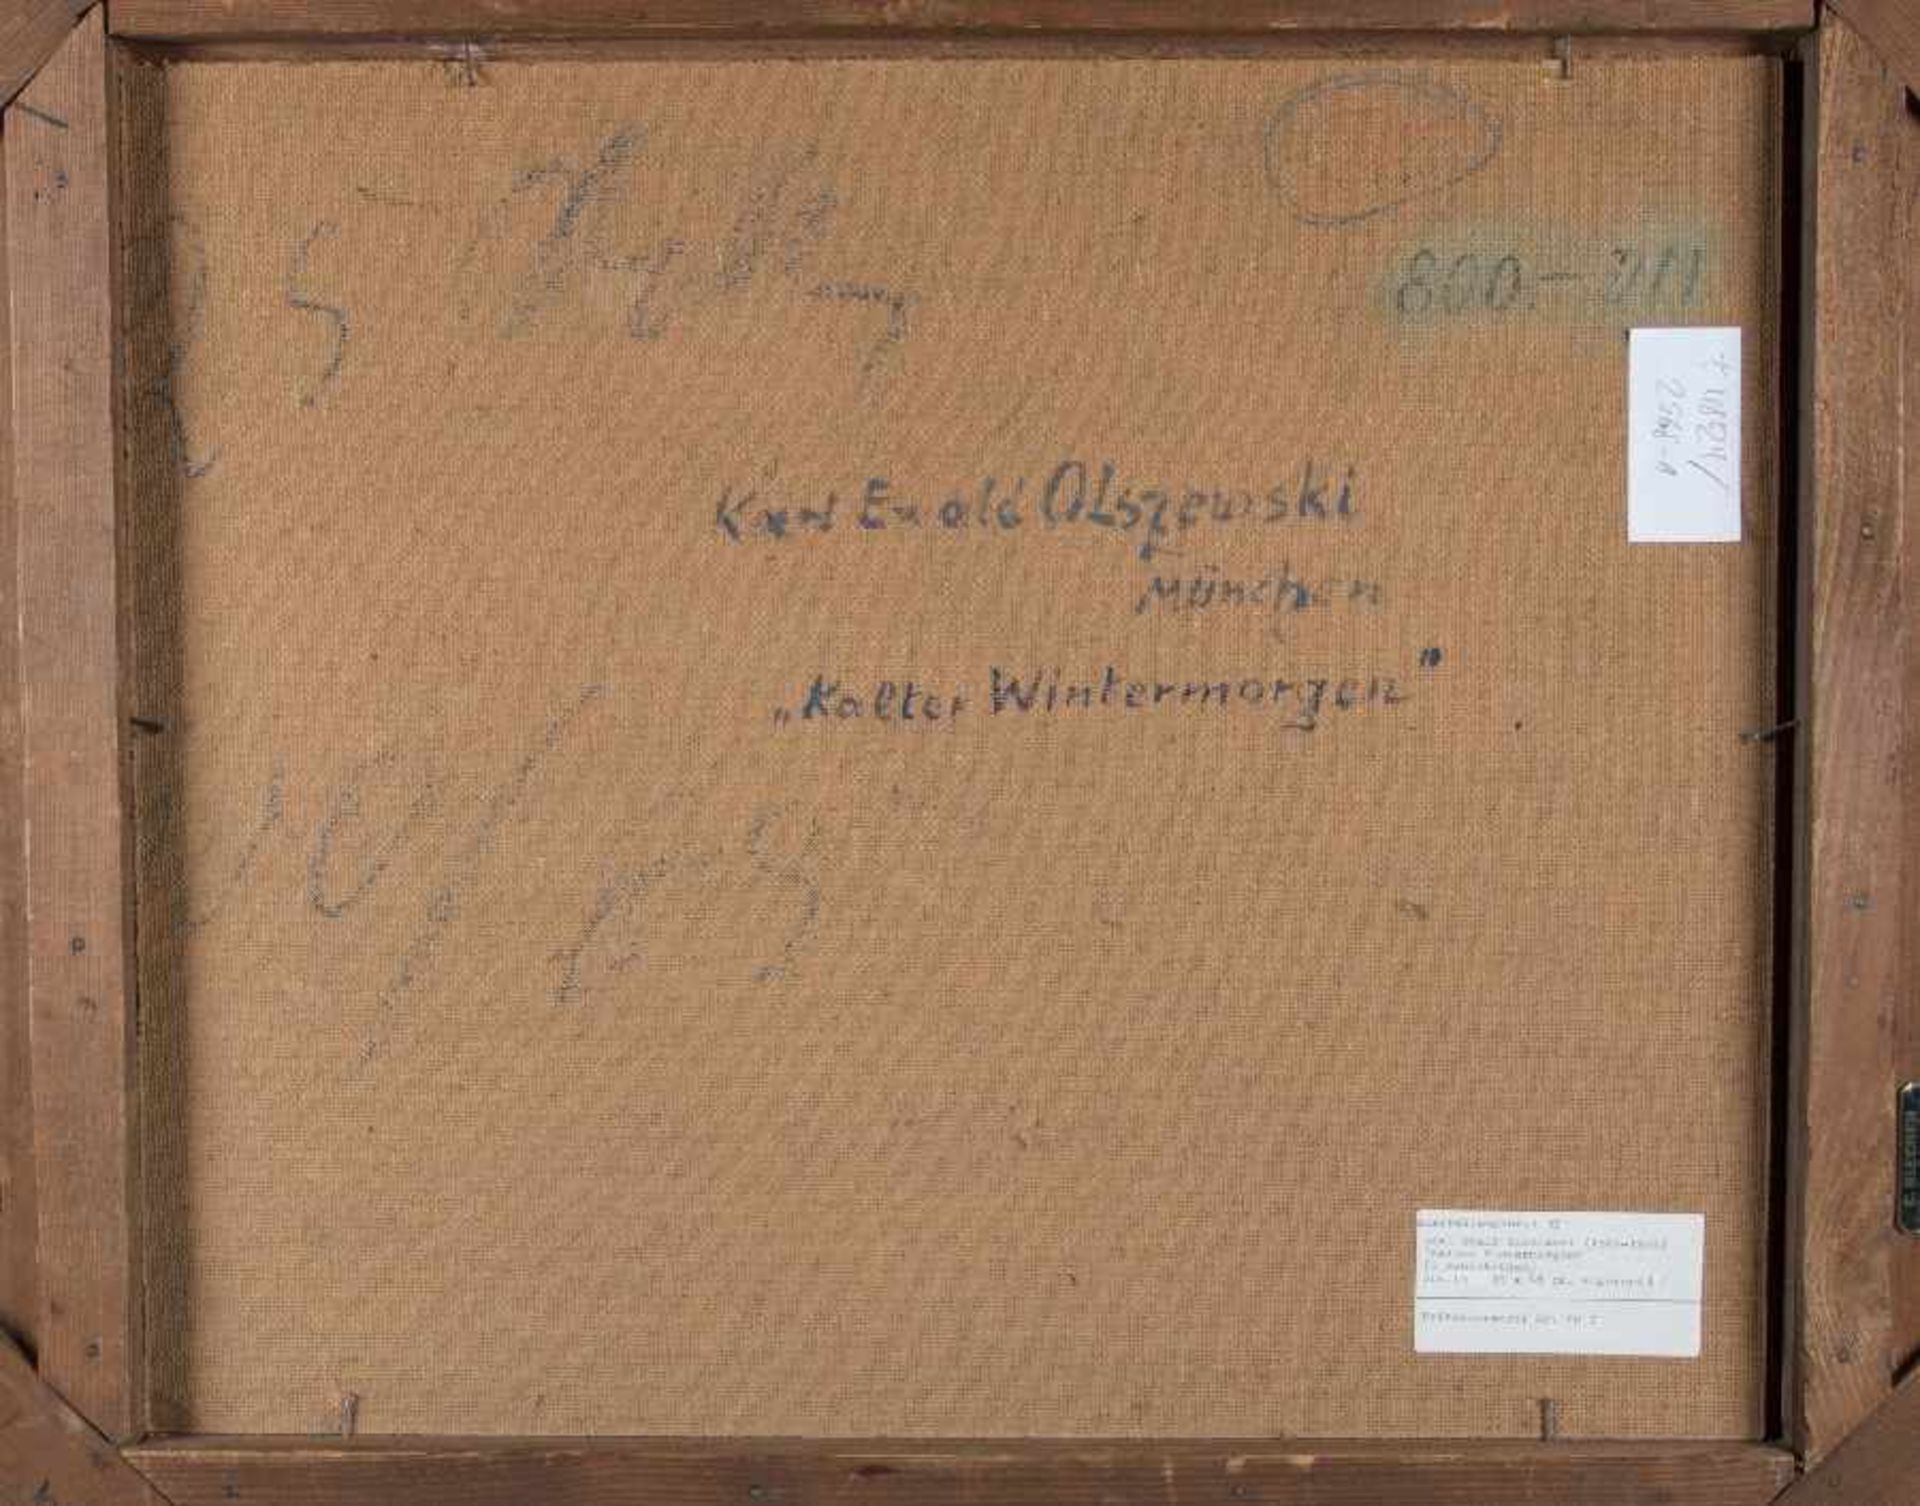 Karl Ewald Olszewski1884 - 1965Kalter WintermorgenÖl auf Hartfaser; H 45,5 cm, B 54,5 cm; signiert - Bild 2 aus 2